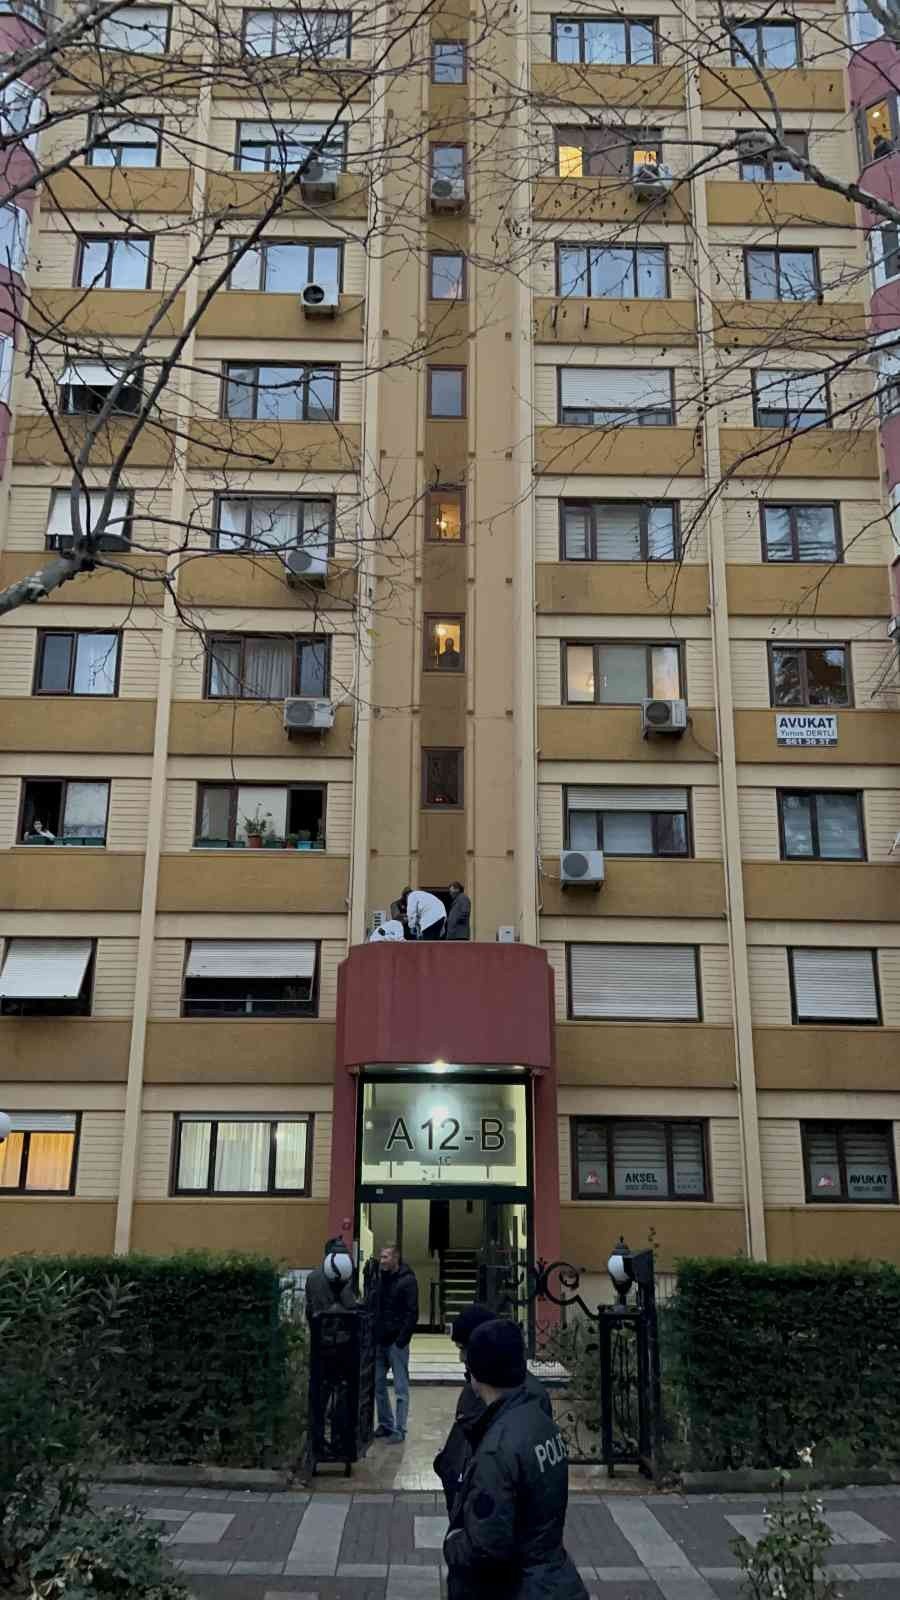 Bakırköy’de 64 yaşındaki kadın 12’nci kattan düşerek hayatını kaybetti